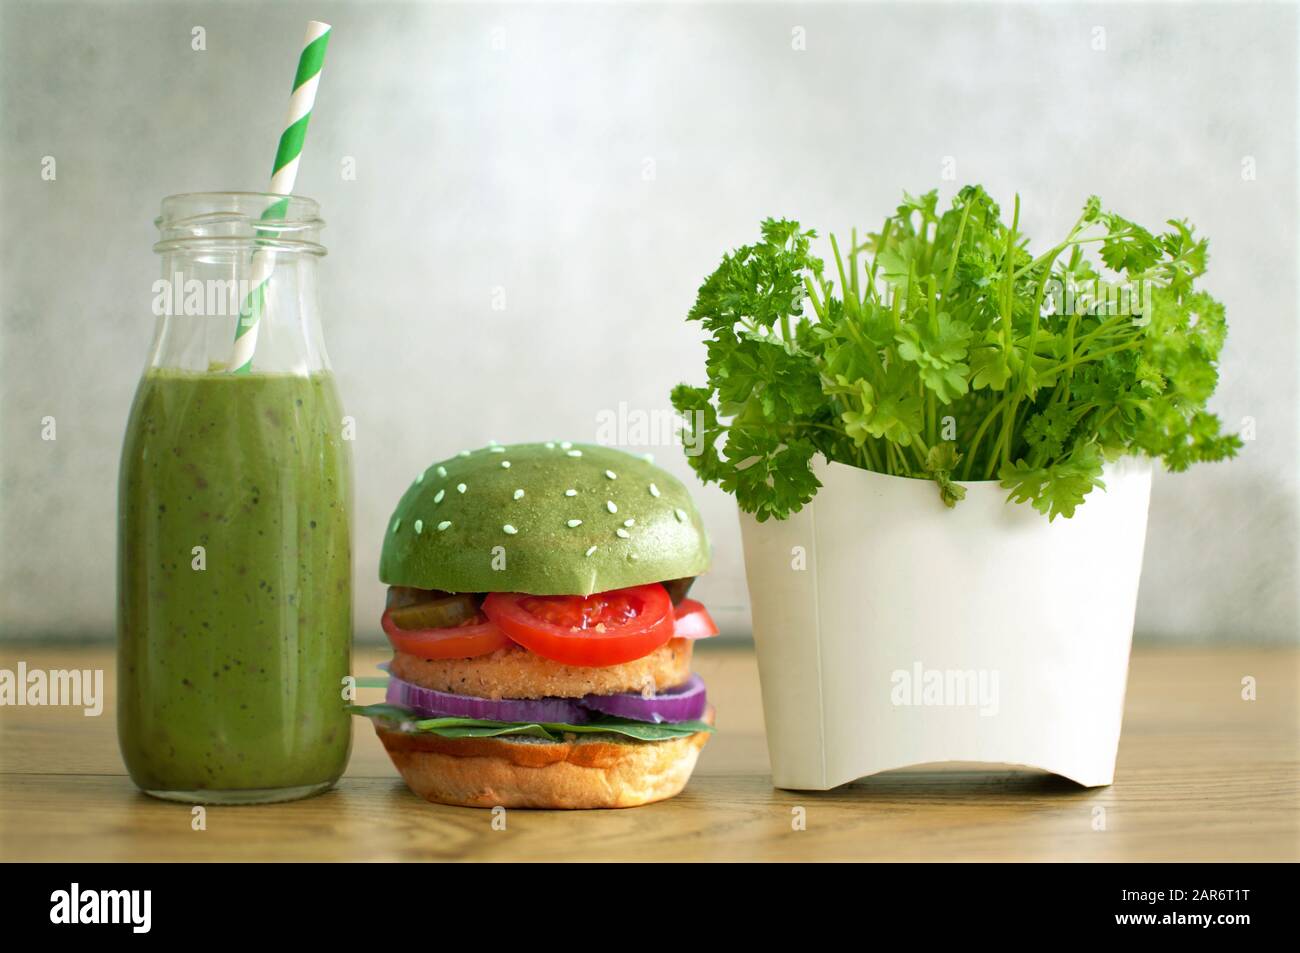 Des aliments sains et rapides, du hamburger vert, du smoothie aux légumes et de la salade dans un récipient à frites Banque D'Images